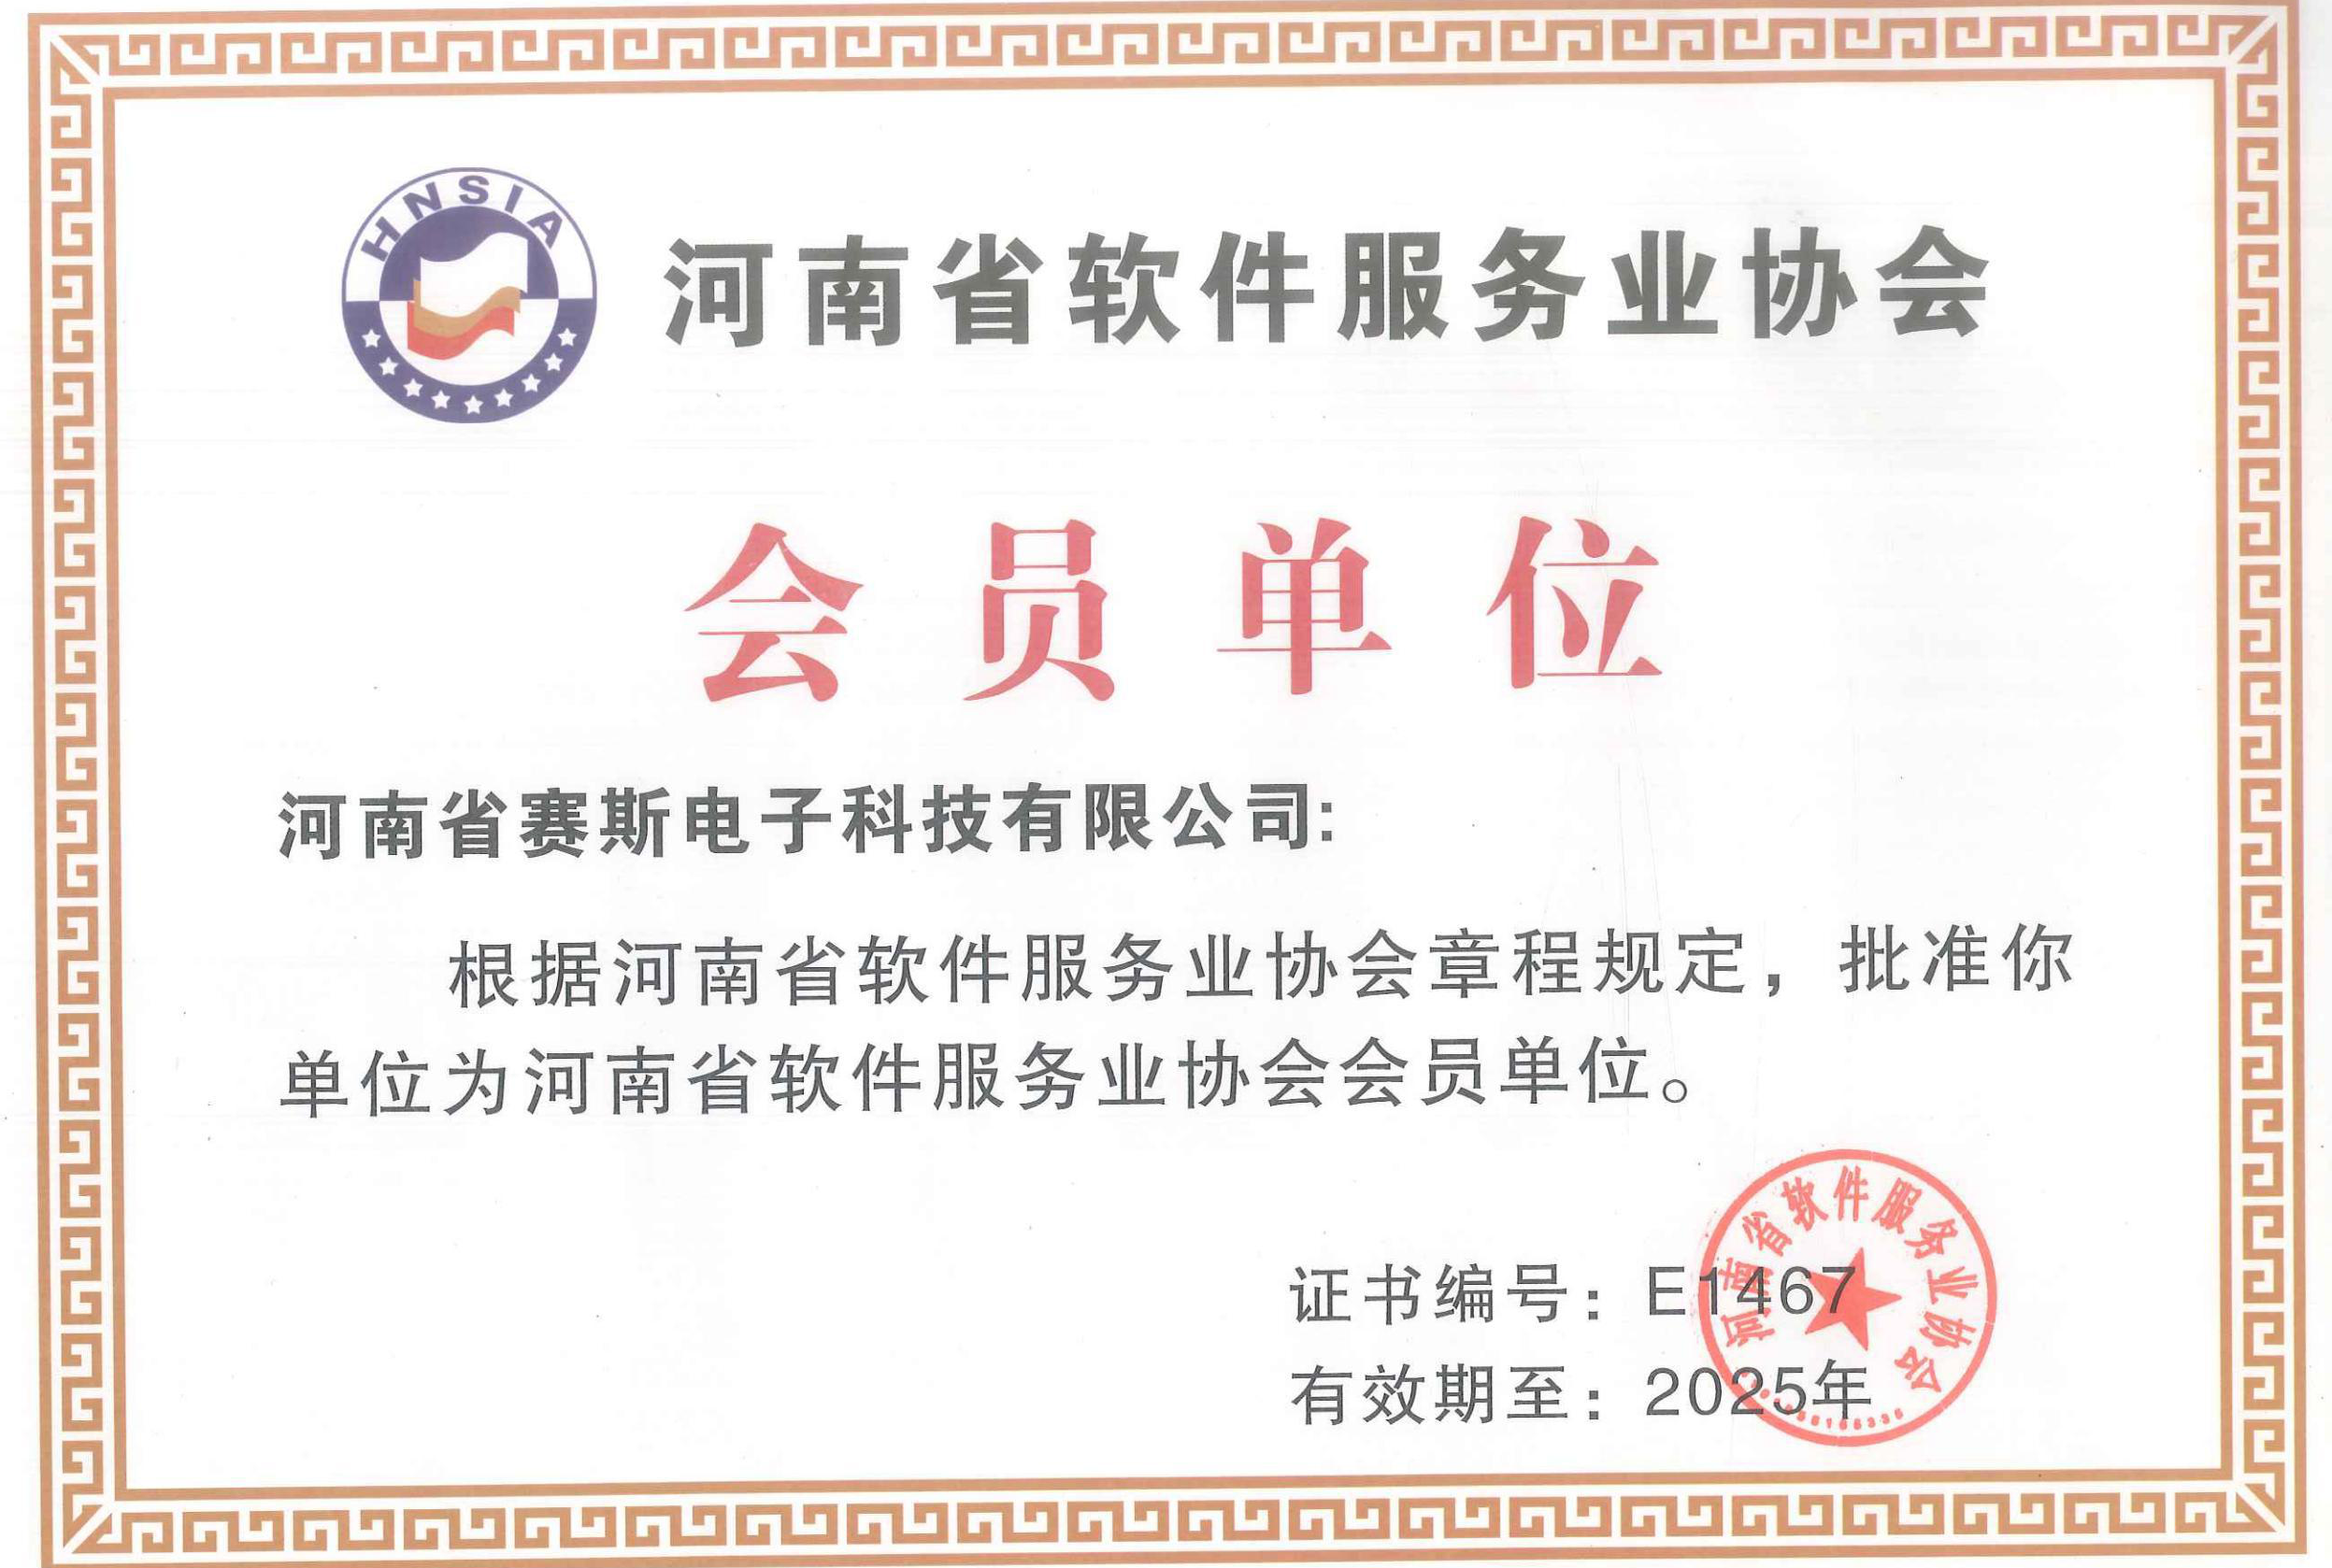 河南省軟件服務業協會